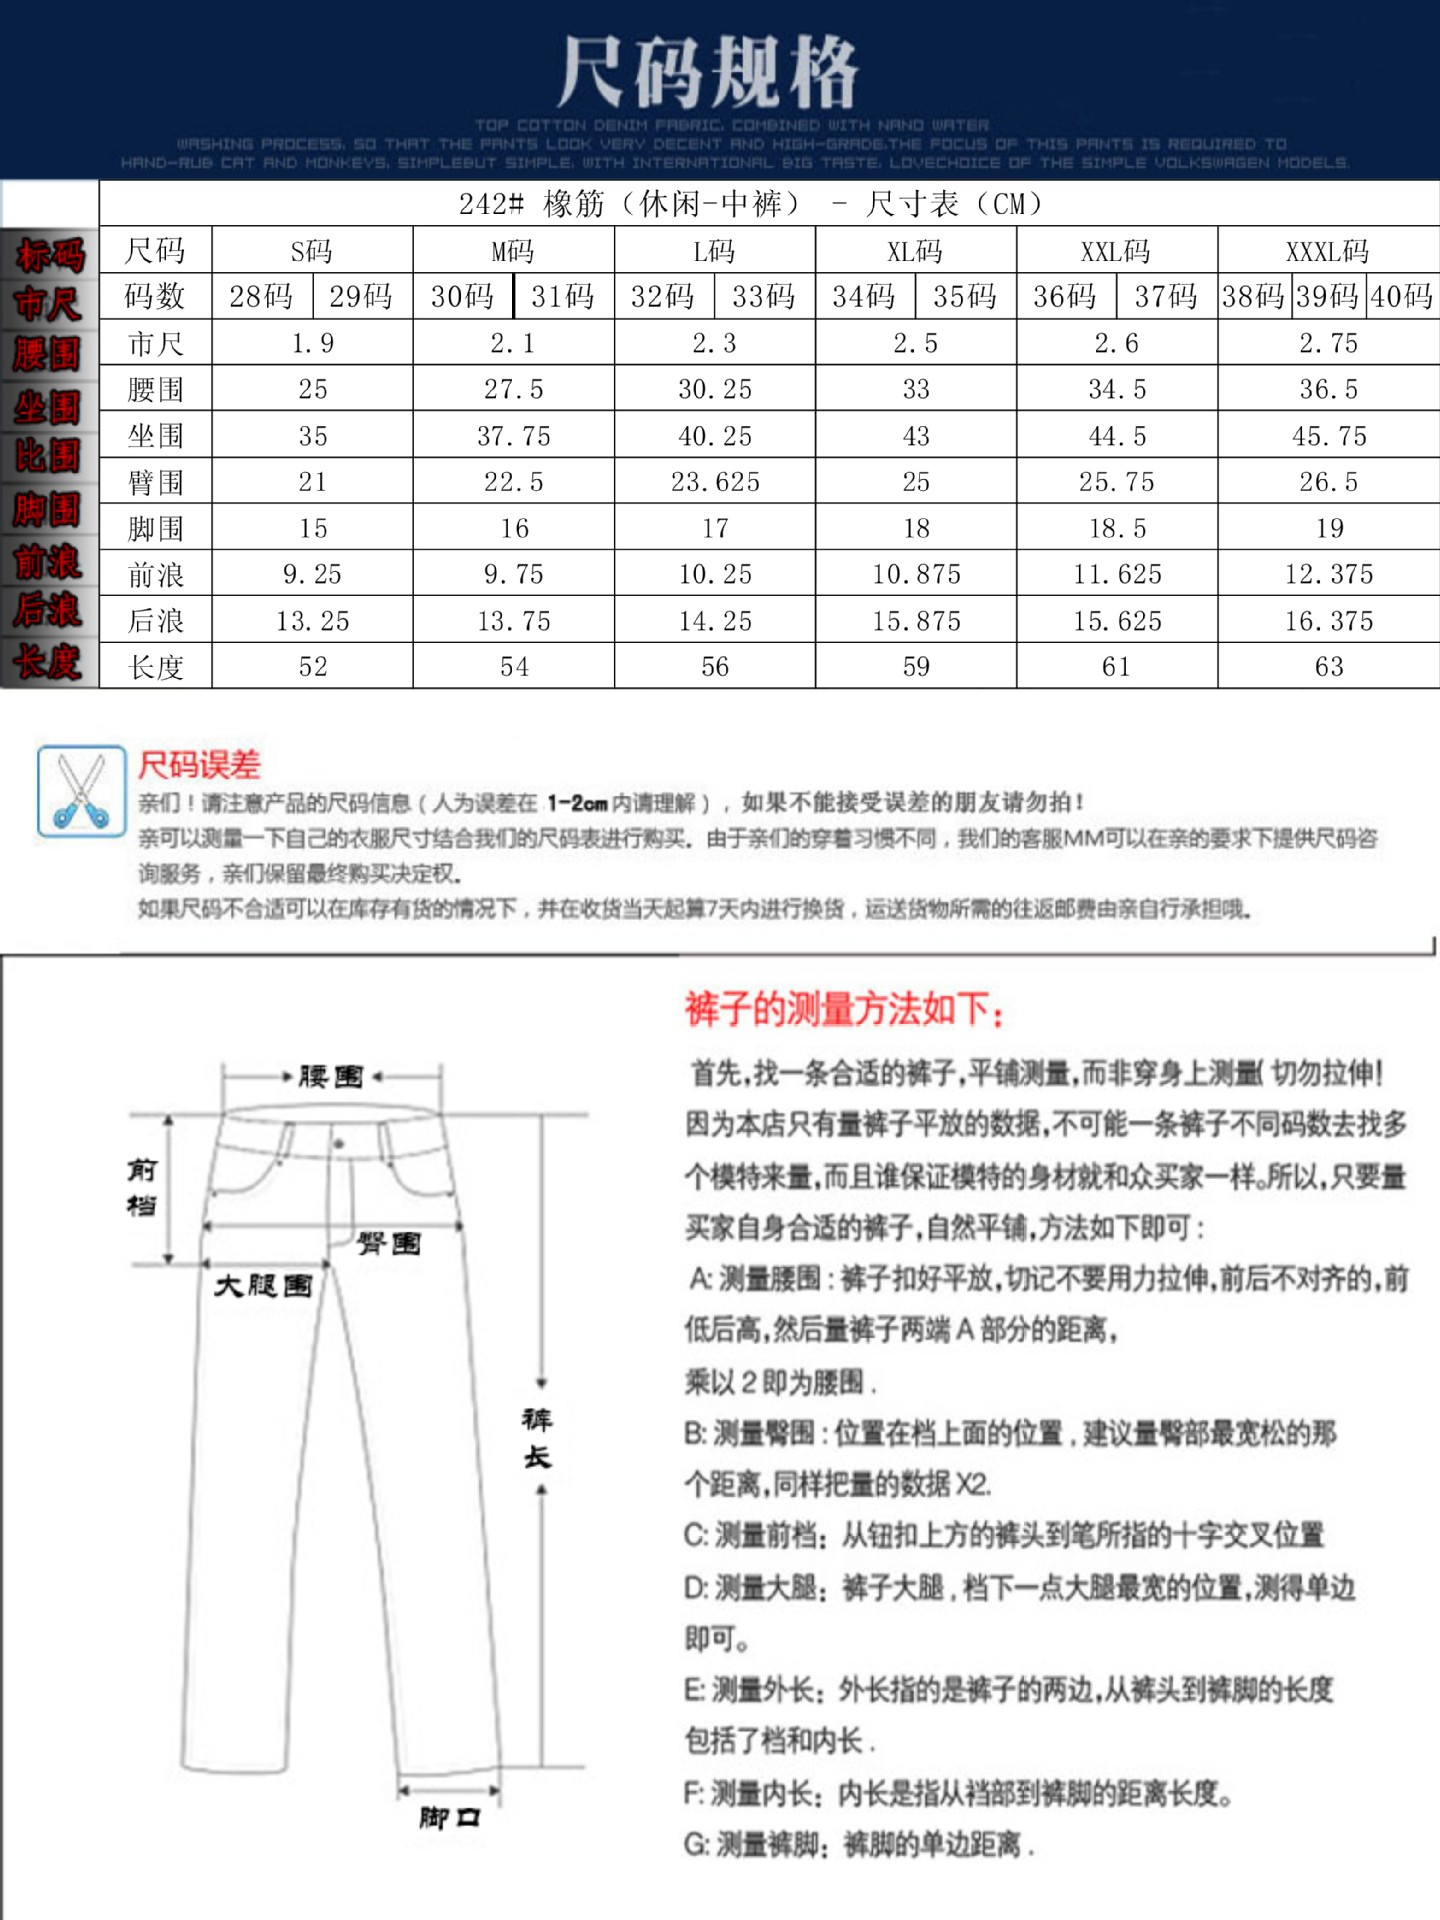 男士短裤尺码对照表xl图片